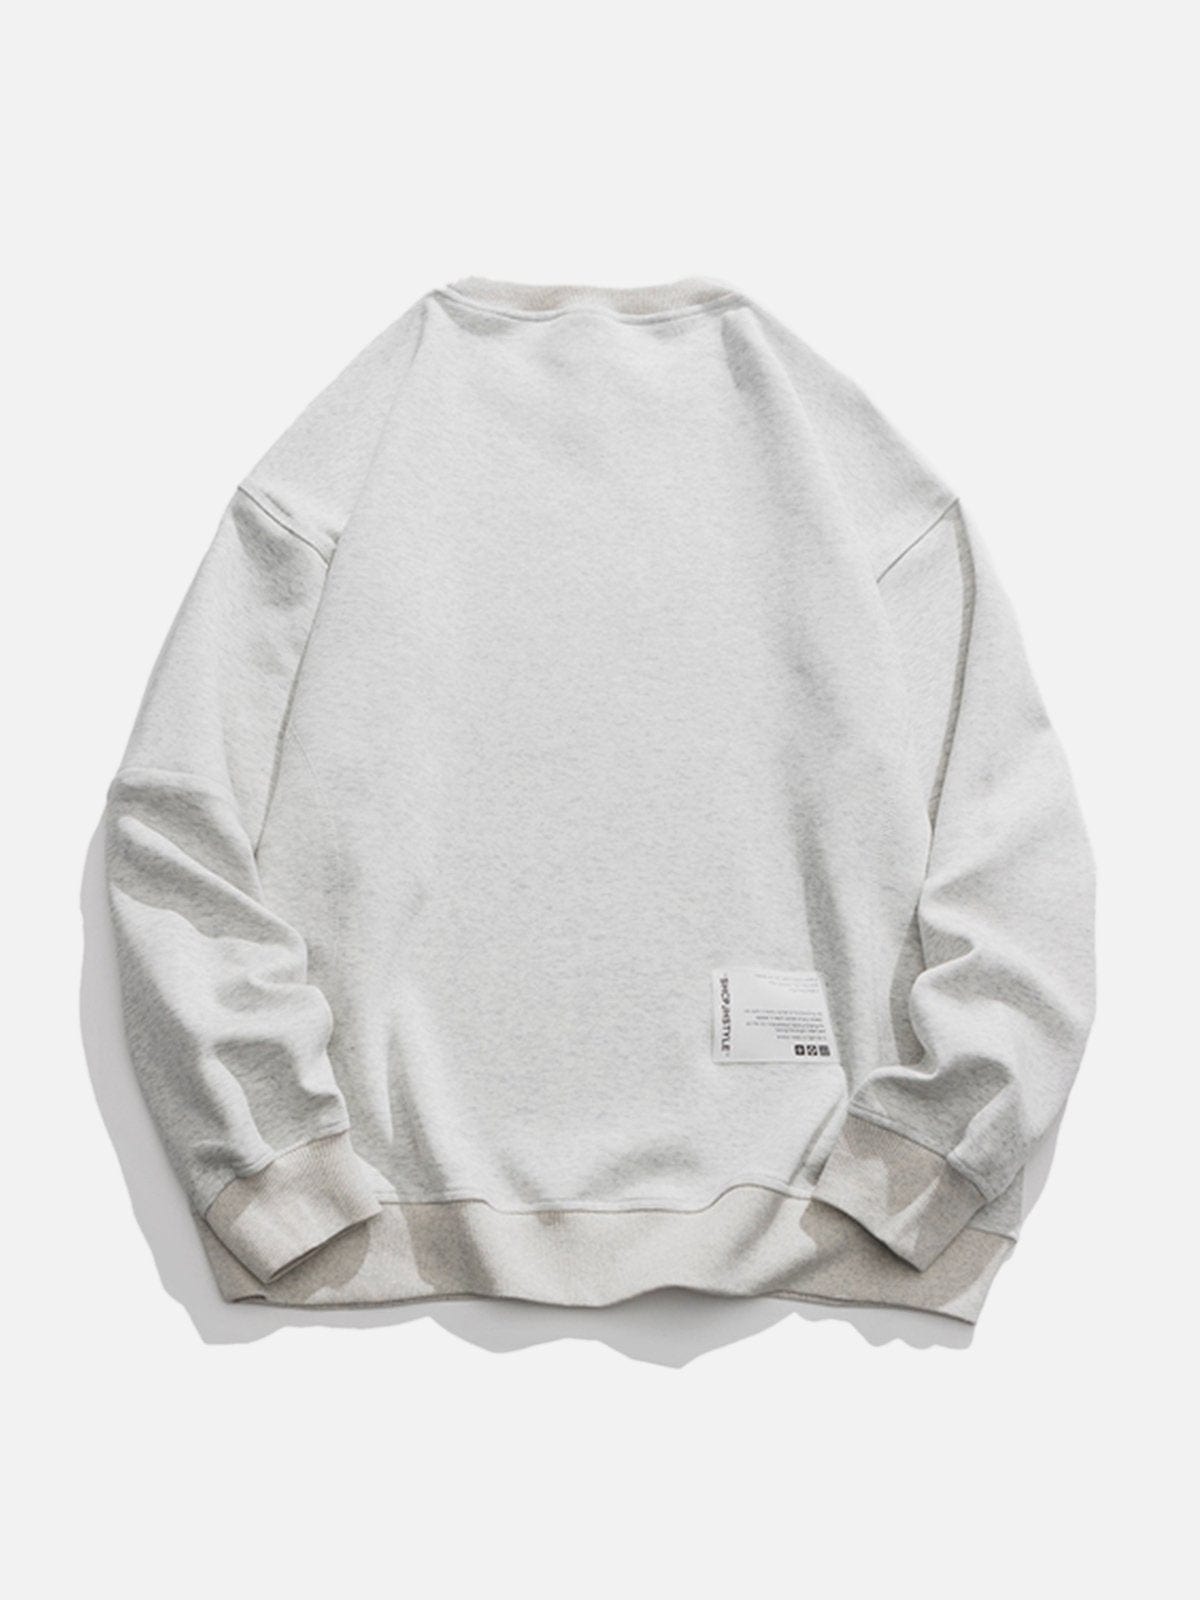 NEV Solid Color Sleeve Zip Up Sweatshirt